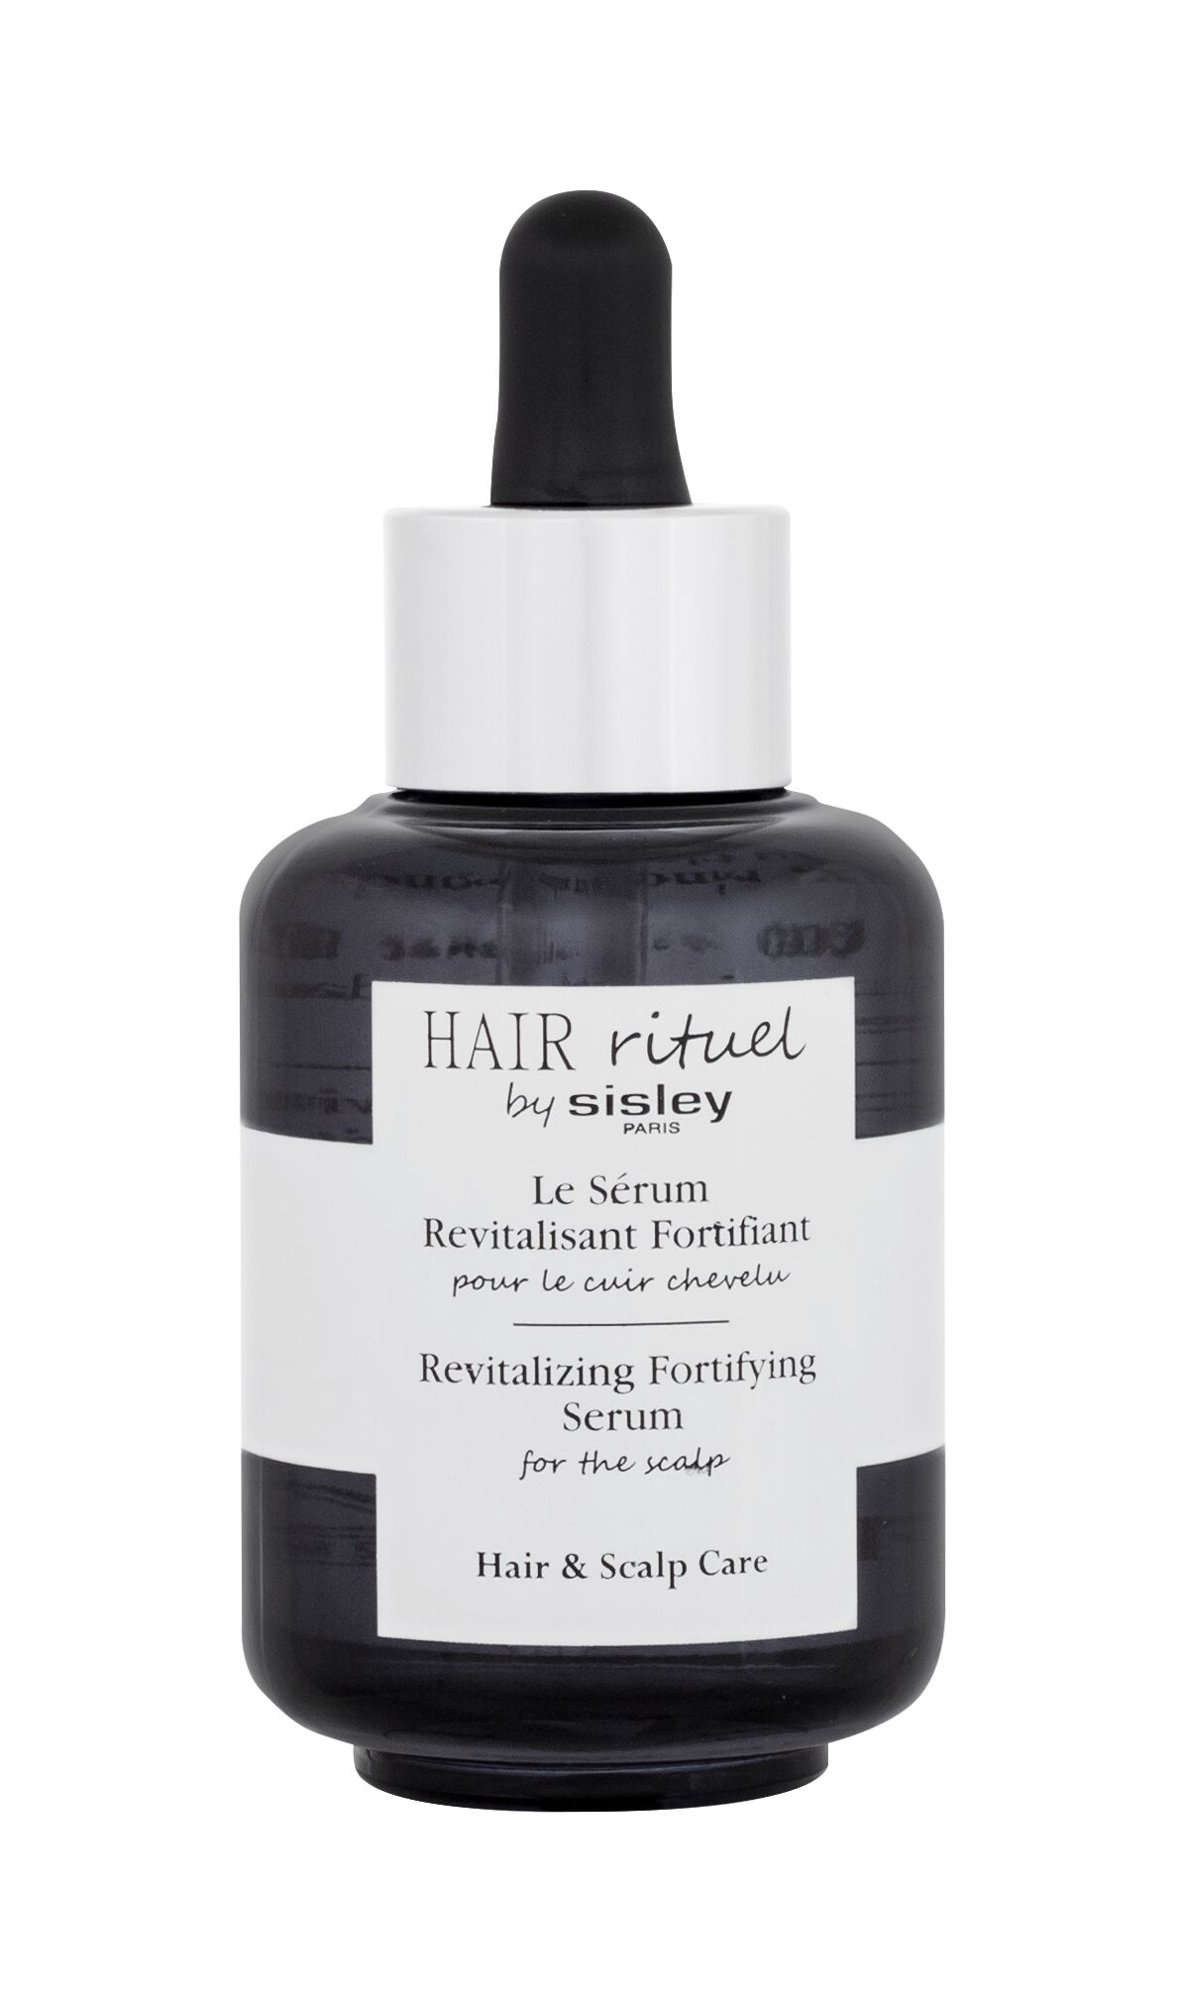 Sisley Hair Rituel Revitalizing Fortifying Serum 60ml NIŠINIAI plaukų serumas